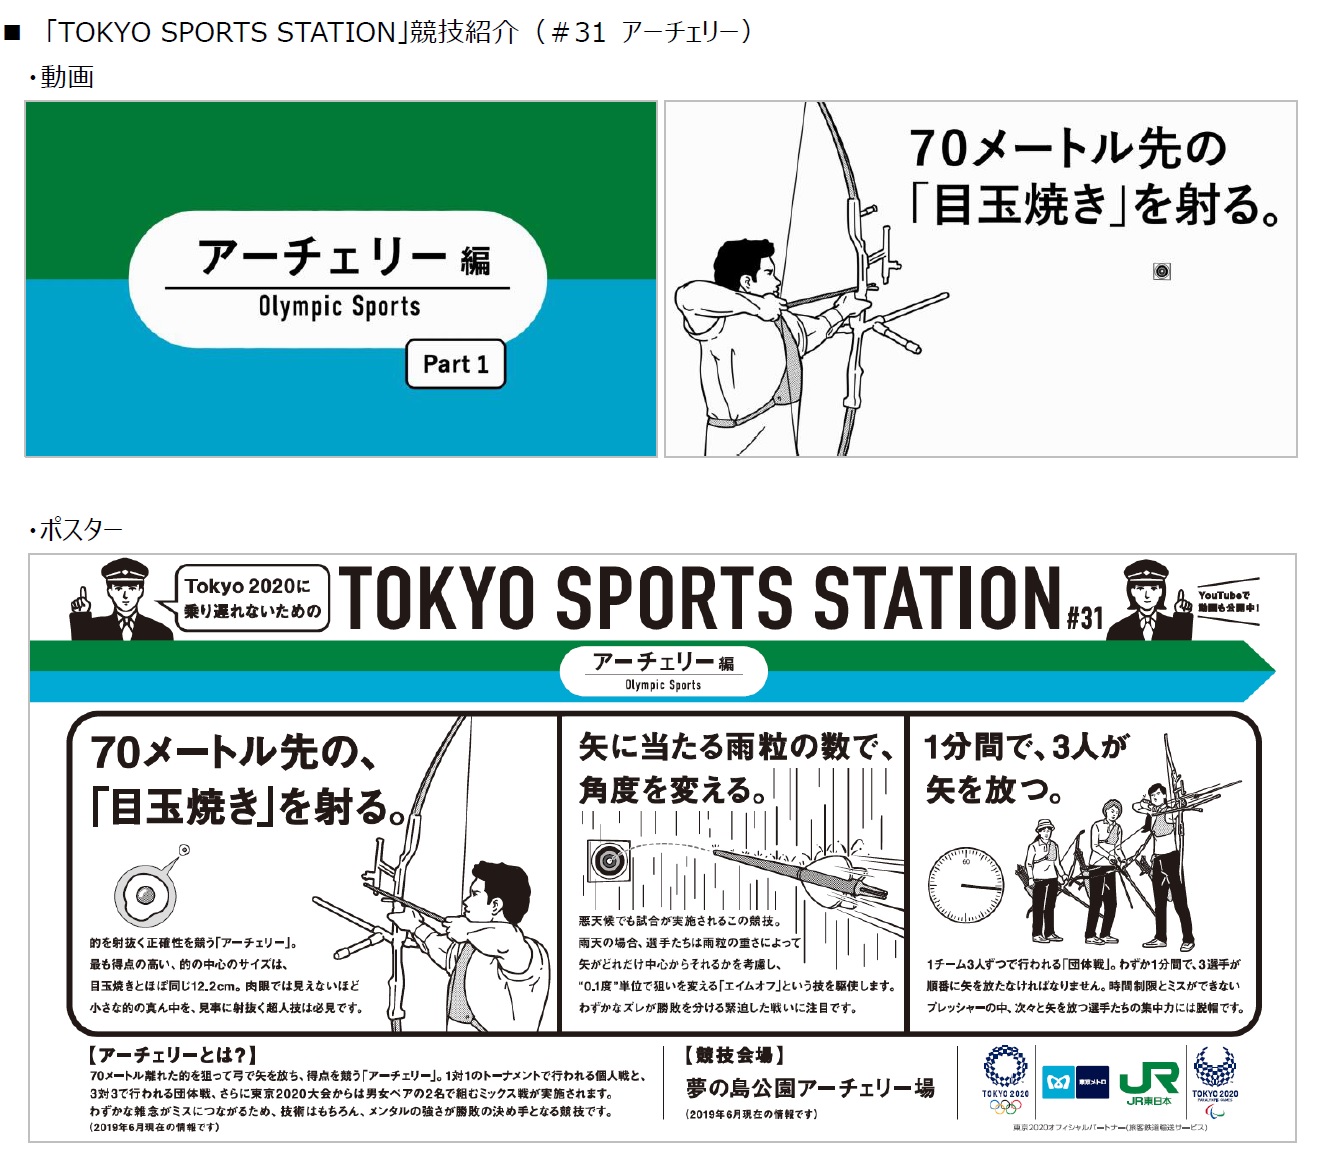 Tokyo Sports Station 第8シリーズの開始及び東京オリンピック パラリンピック競技大会組織委員会 Tokyoid利用者用ポータル Mｙtokyo への掲載について 東京メトロのプレスリリース